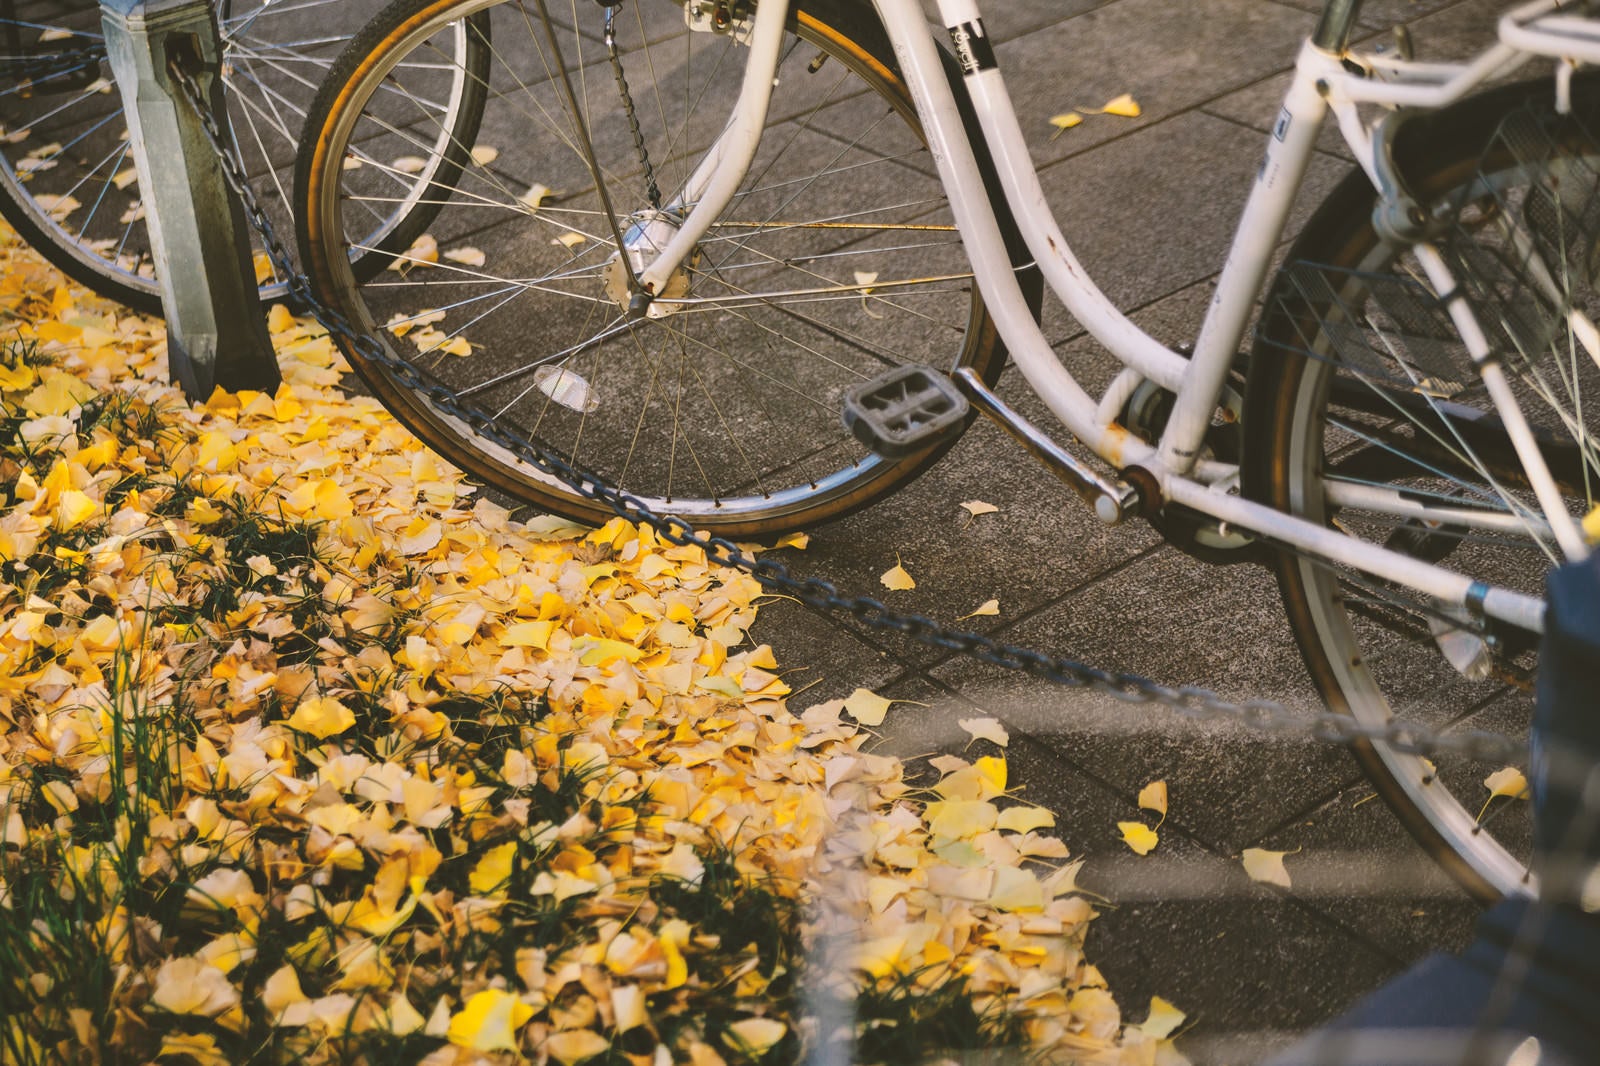 「放置自転車と銀杏の葉」の写真